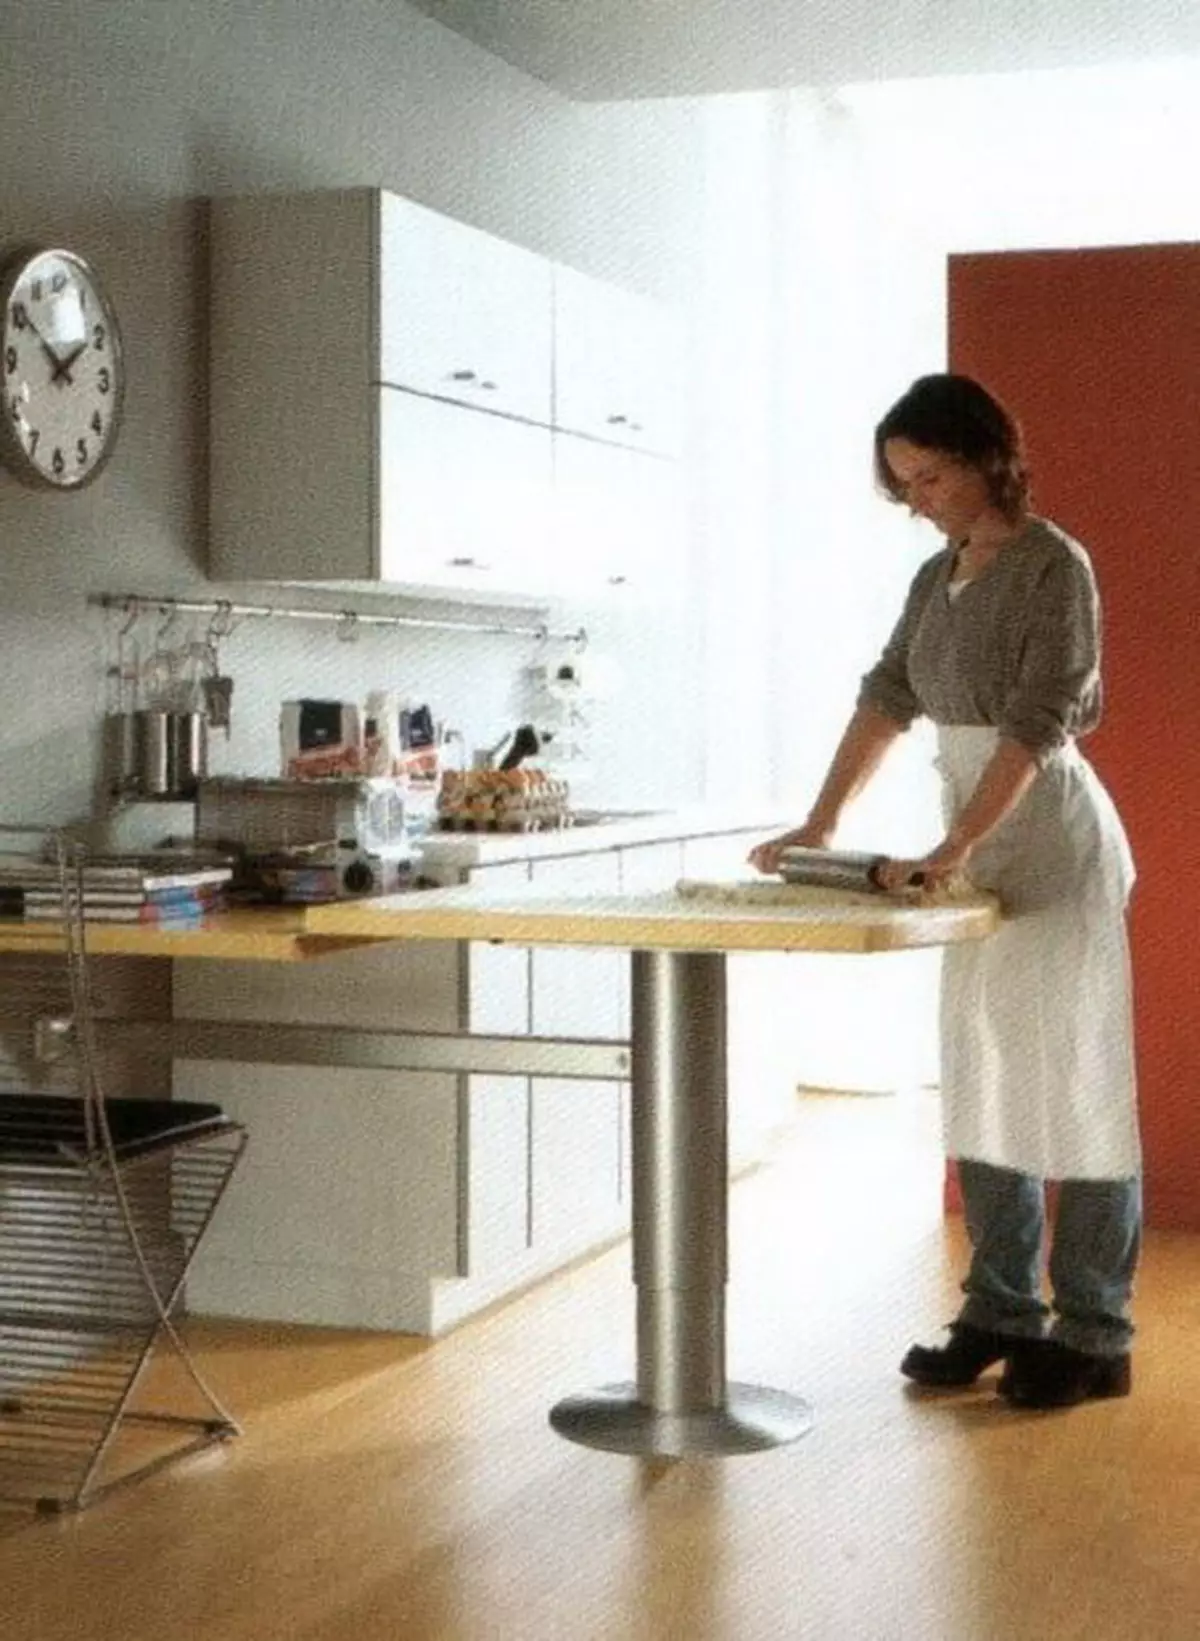 Keukenarbeiders Tafels (49 foto's): Mobiele snijtafels voor keukens van headligers, productie-professionele tafels met planken en andere opties 24846_33